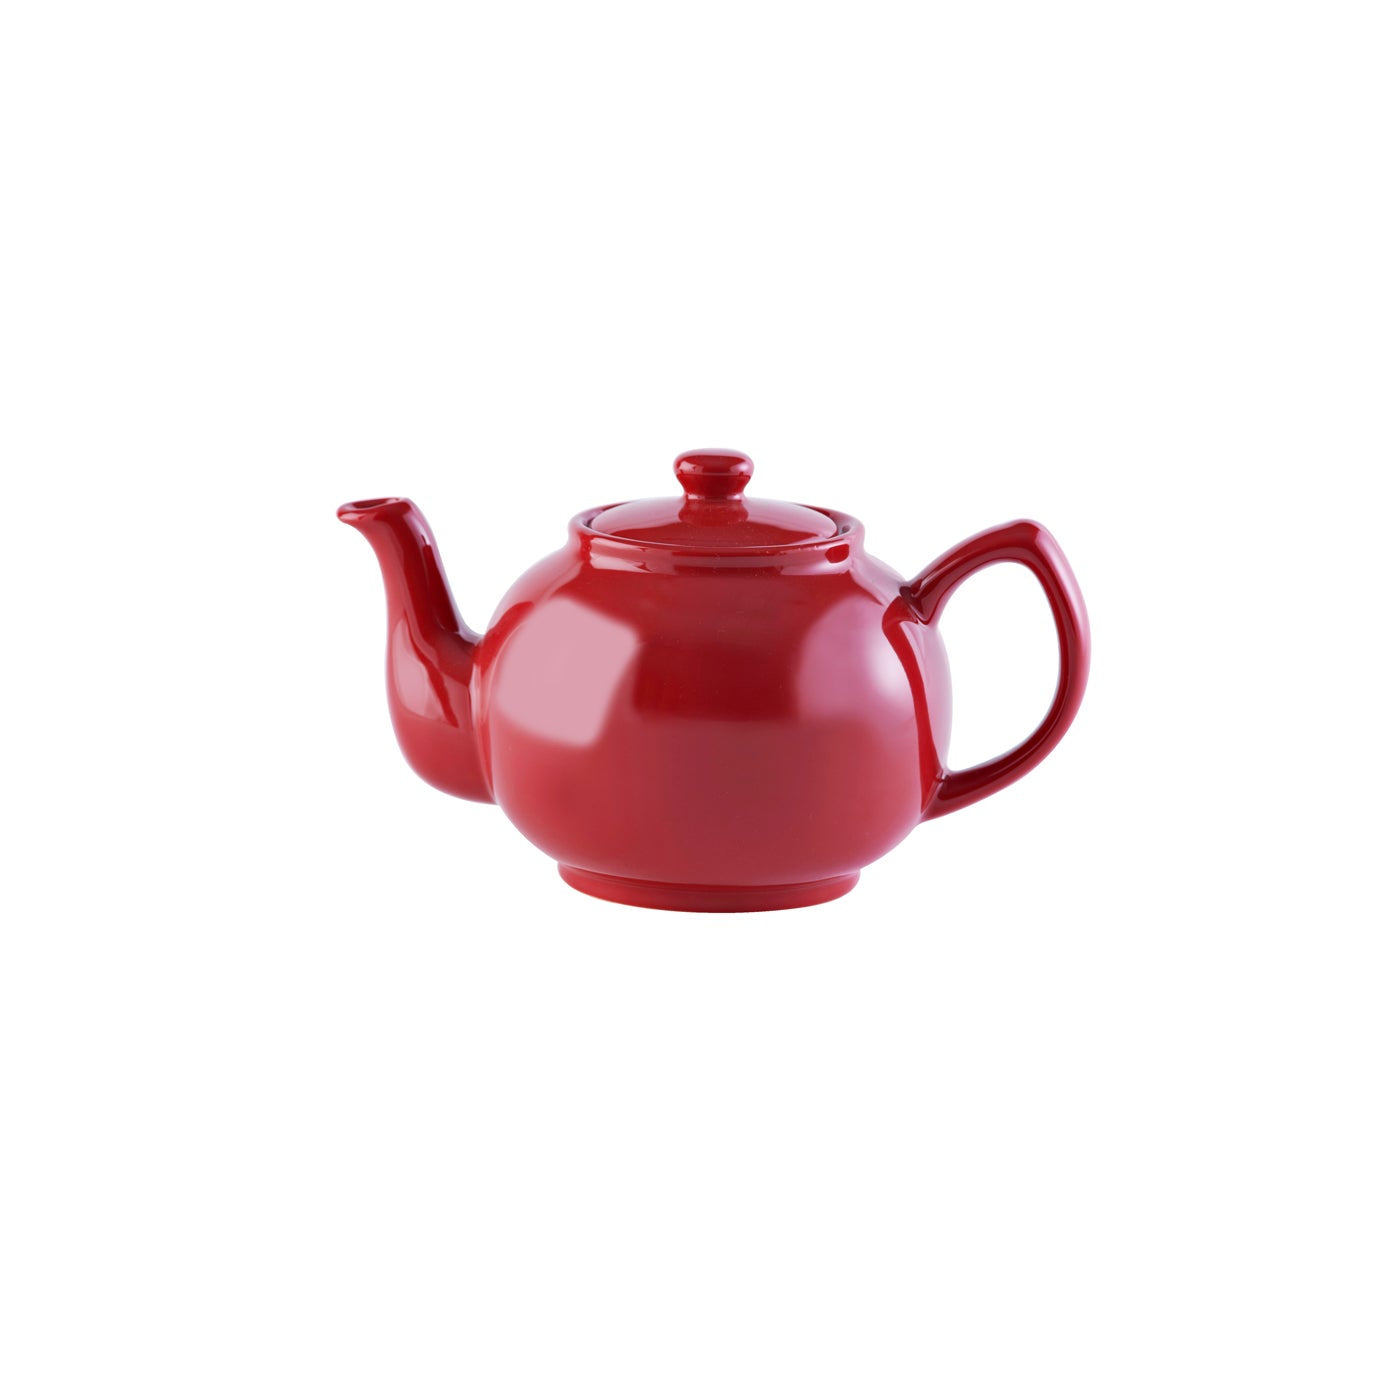 Price & Kensington Tea Pot - Holiday Red